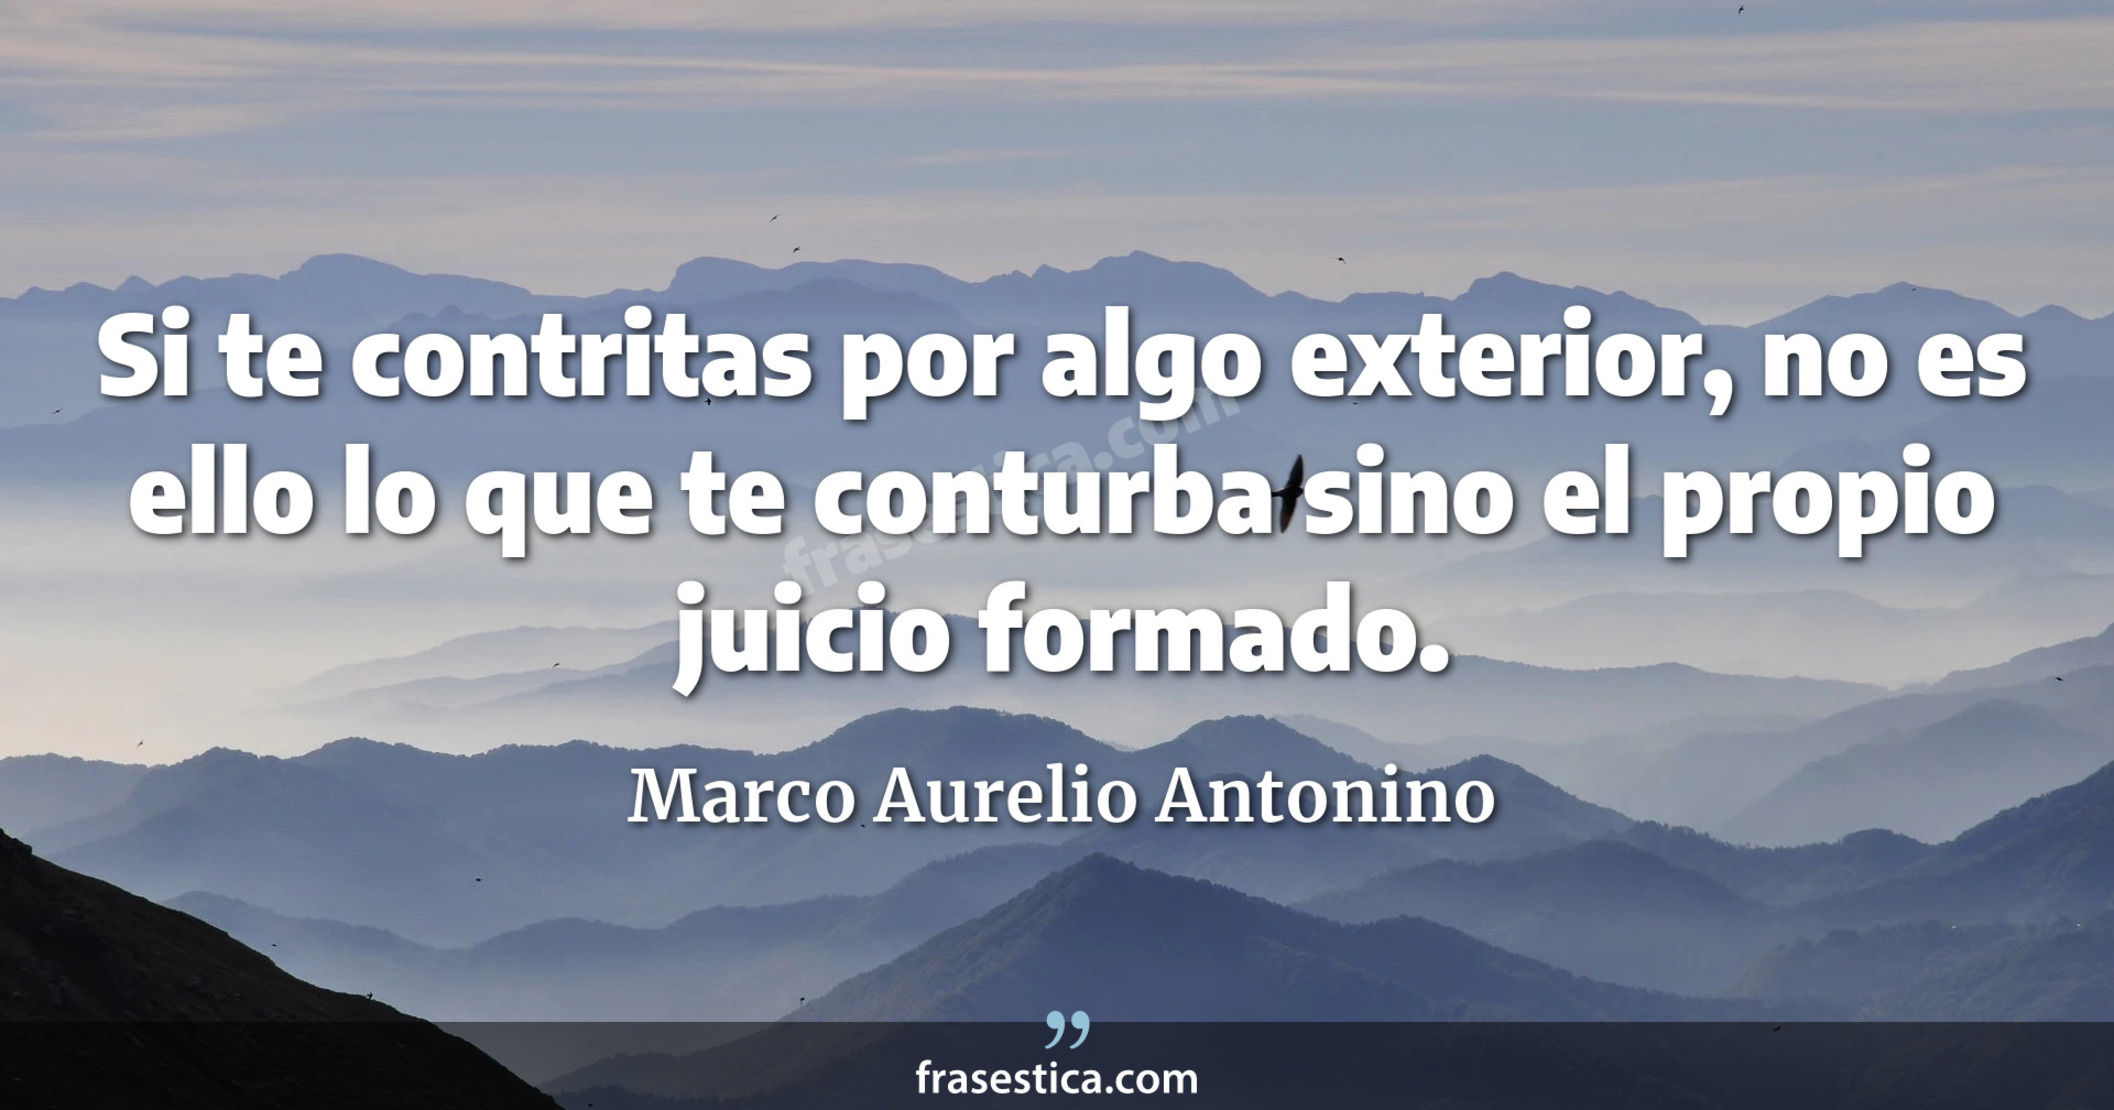 Si te contritas por algo exterior, no es ello lo que te conturba sino el propio juicio formado. - Marco Aurelio Antonino